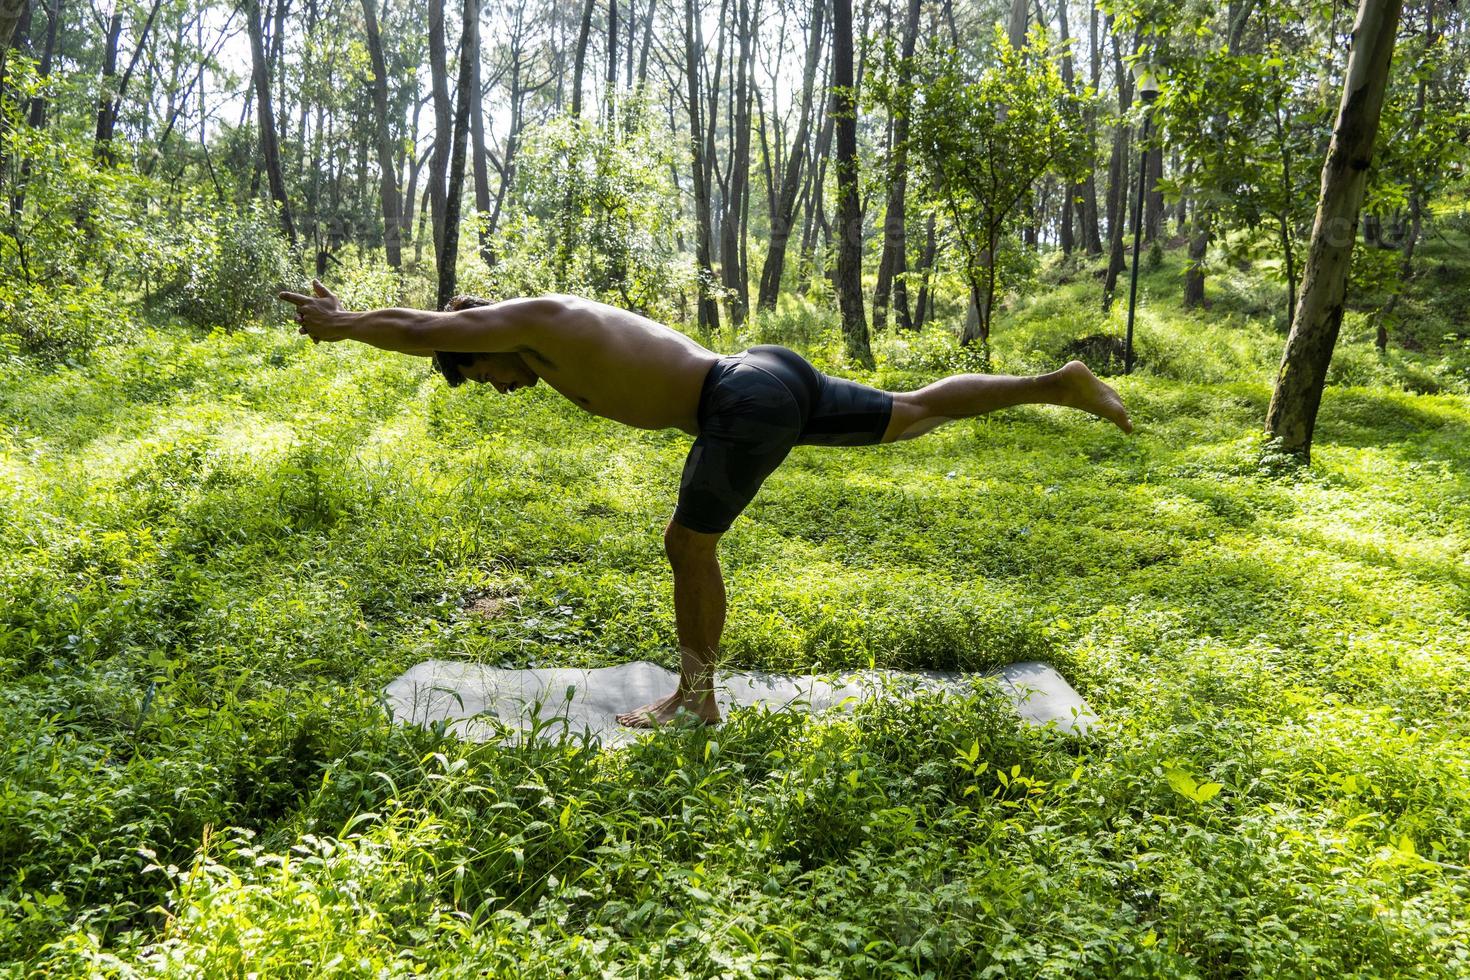 hombre mexicano haciendo yoga y estirándose en el bosque, méxico foto